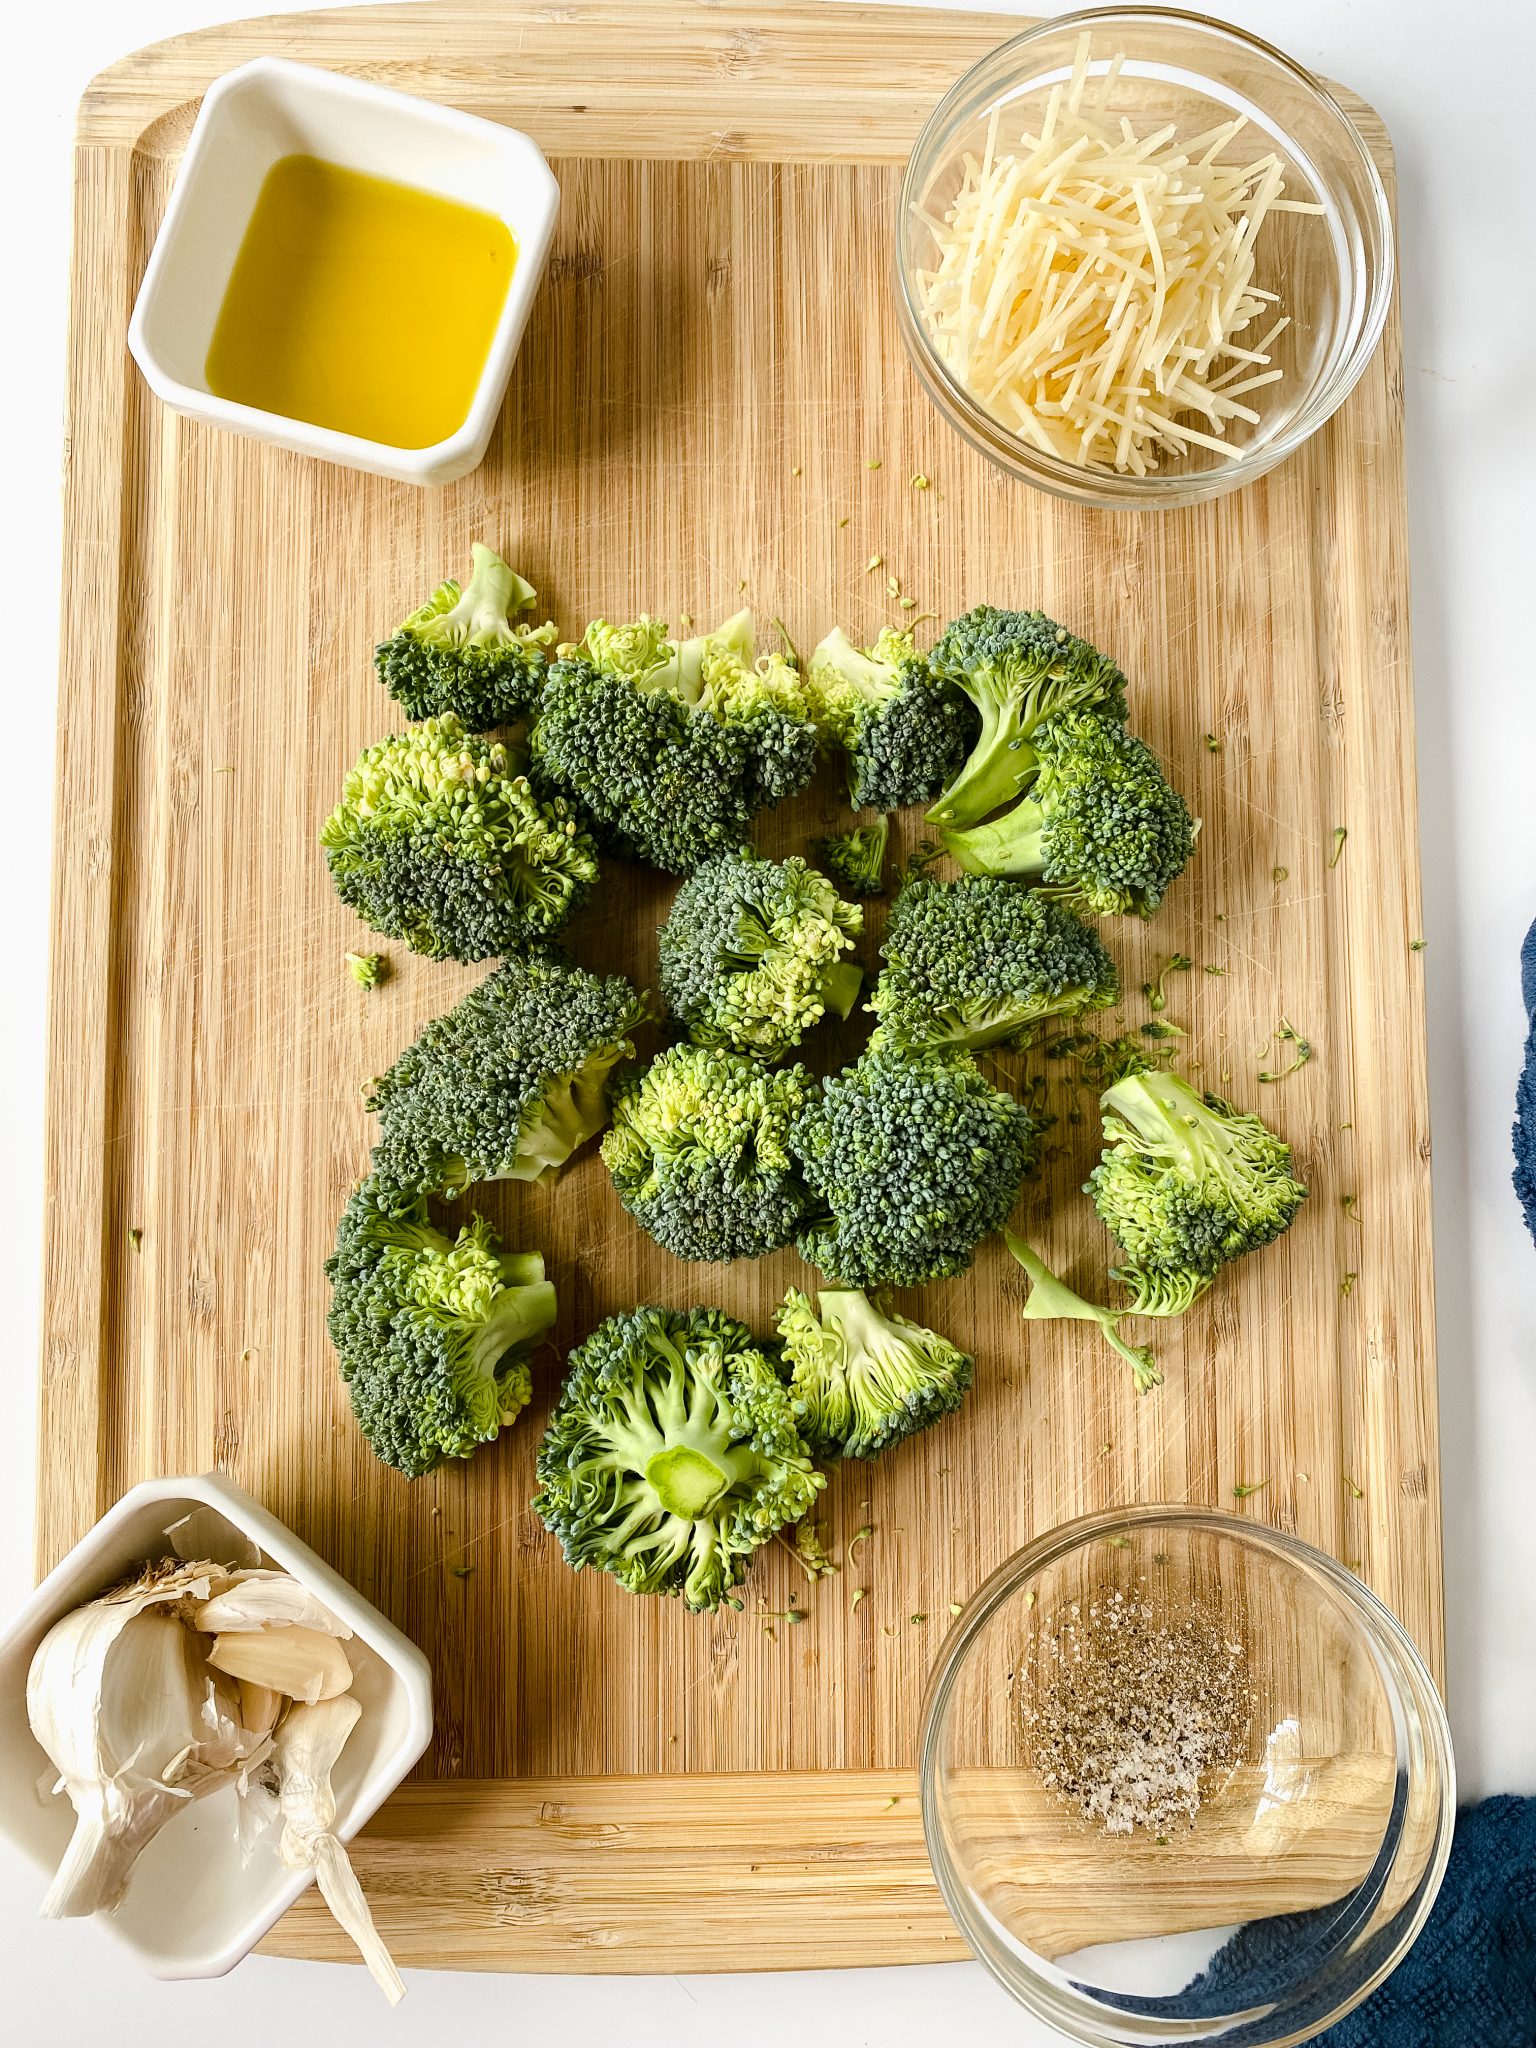 Roasted Parmesan Broccoli Ingredients